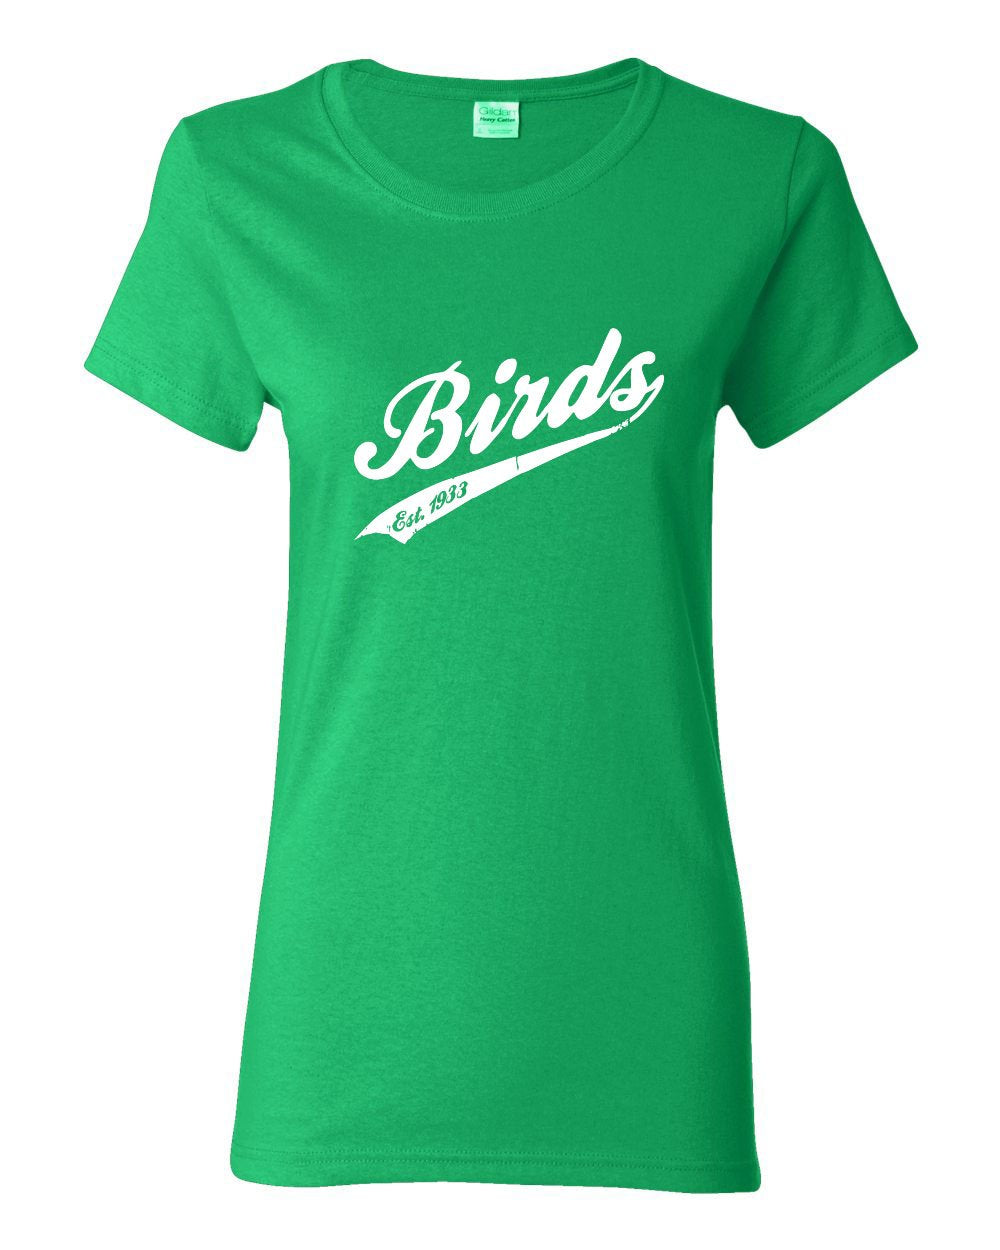 Birds Vintage LADIES Missy-Fit T-Shirt